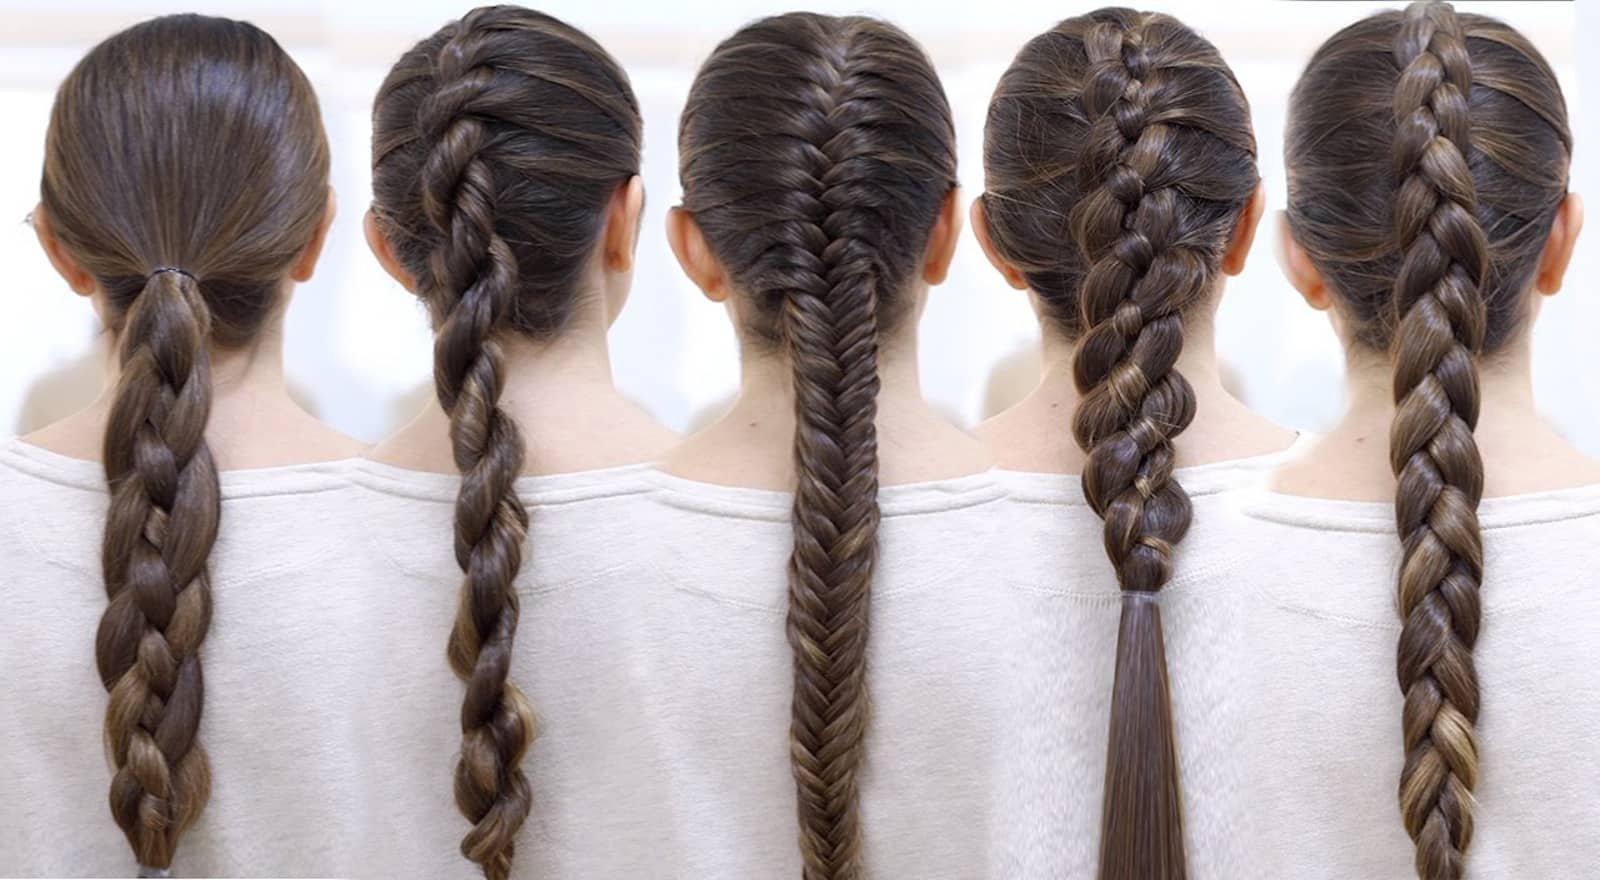 Косы заплете н нн ы. Красивые причёски для девочек в школу. Плетение на длинные волосы для девочек в школу. Школьные прически для девочек. Колосок на длинные волосы для девочек.